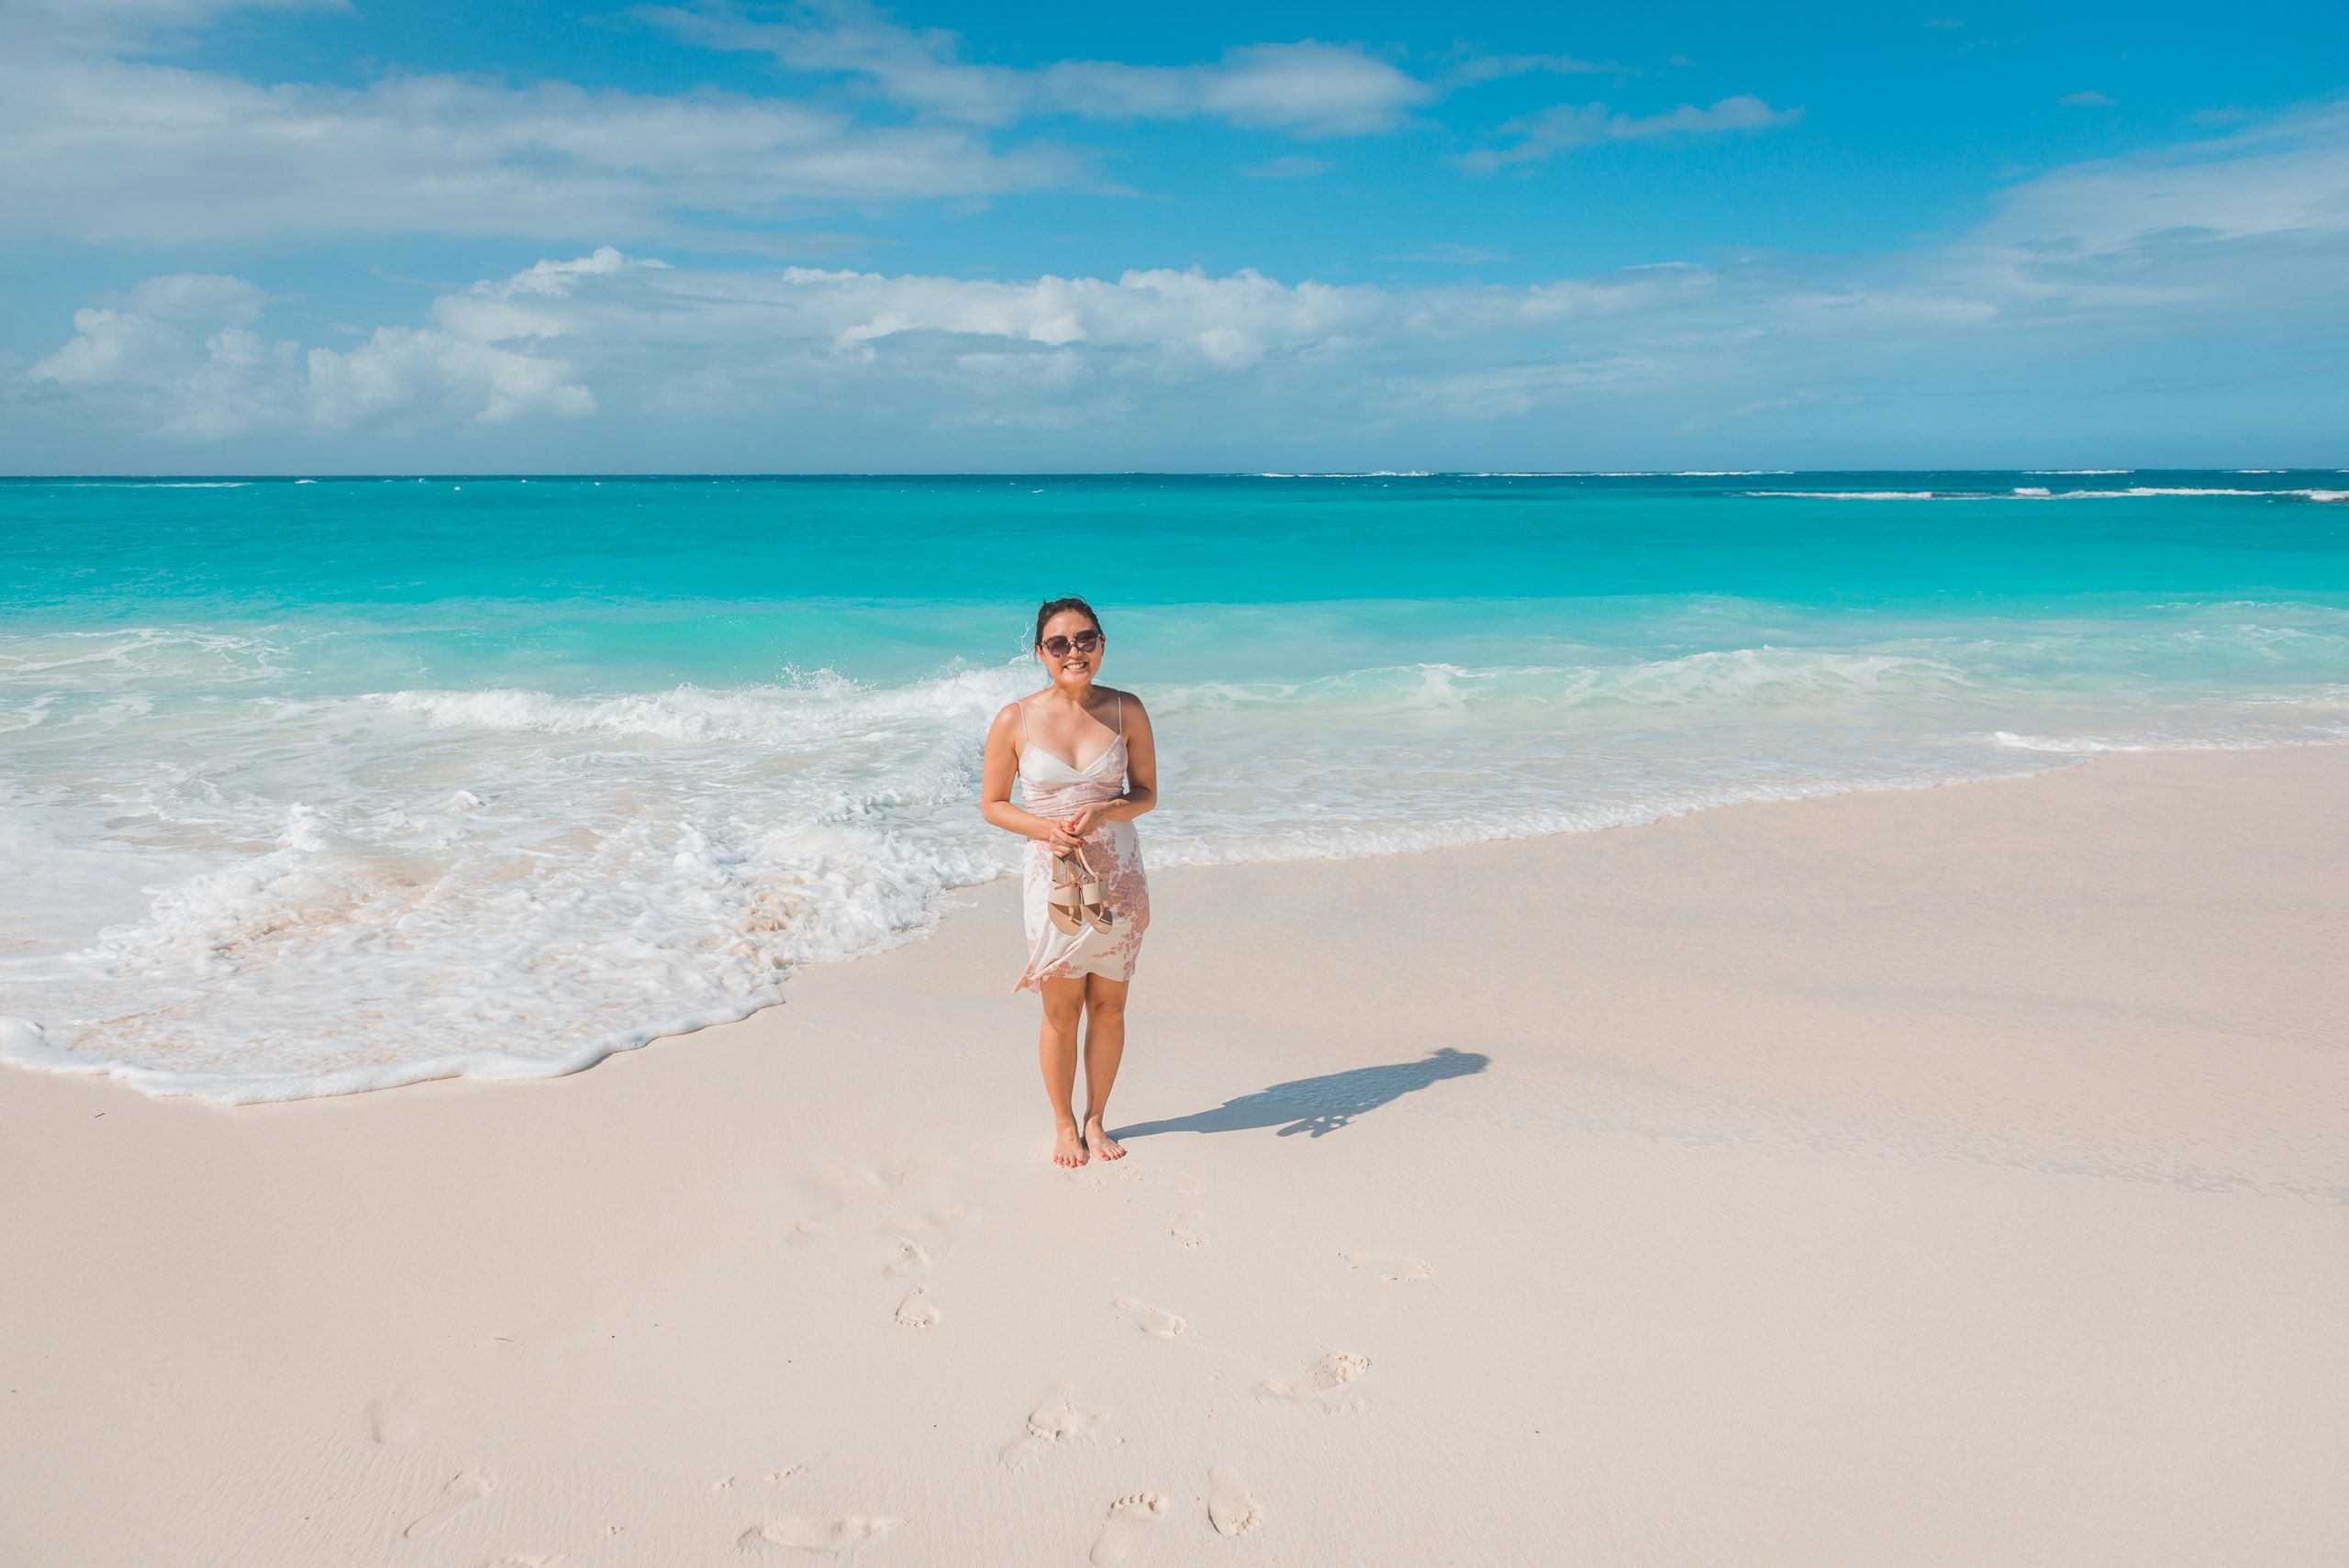 Jessica on the Beach in Anguilla